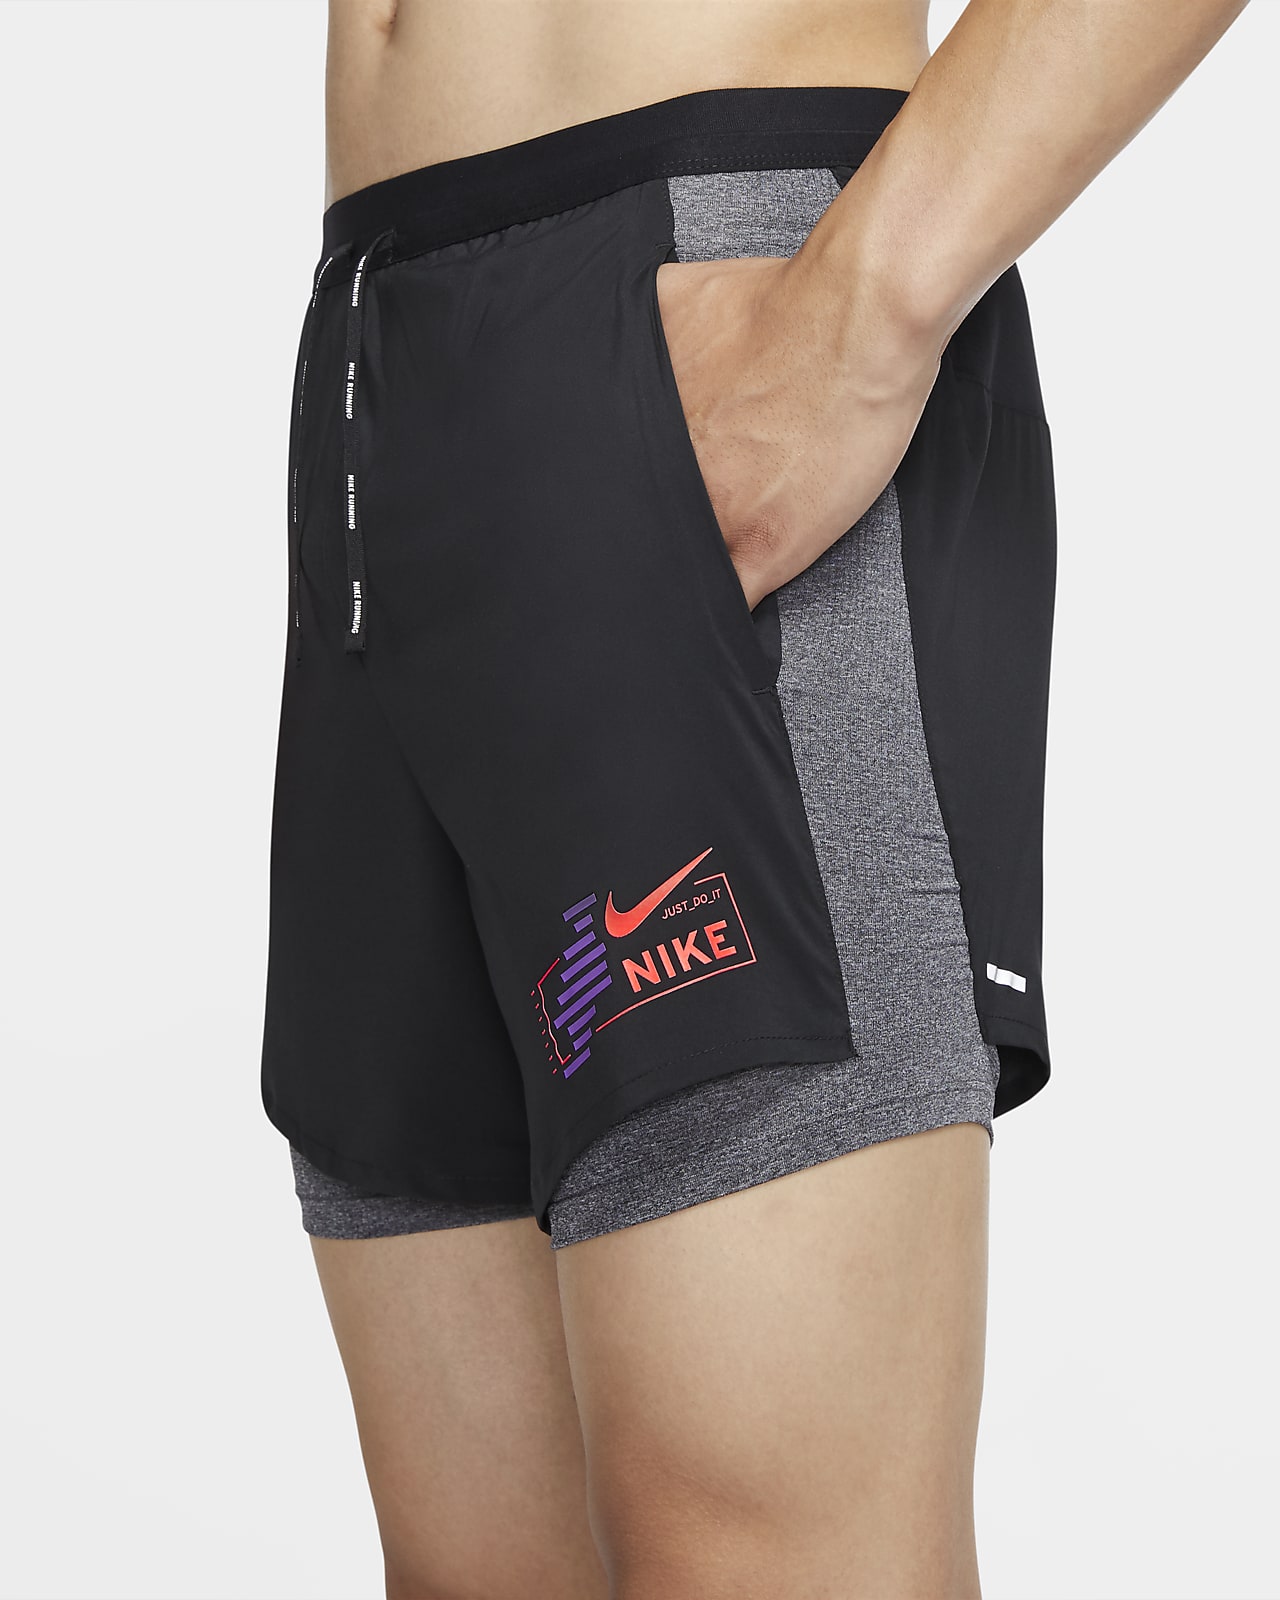 nike running fast shorts